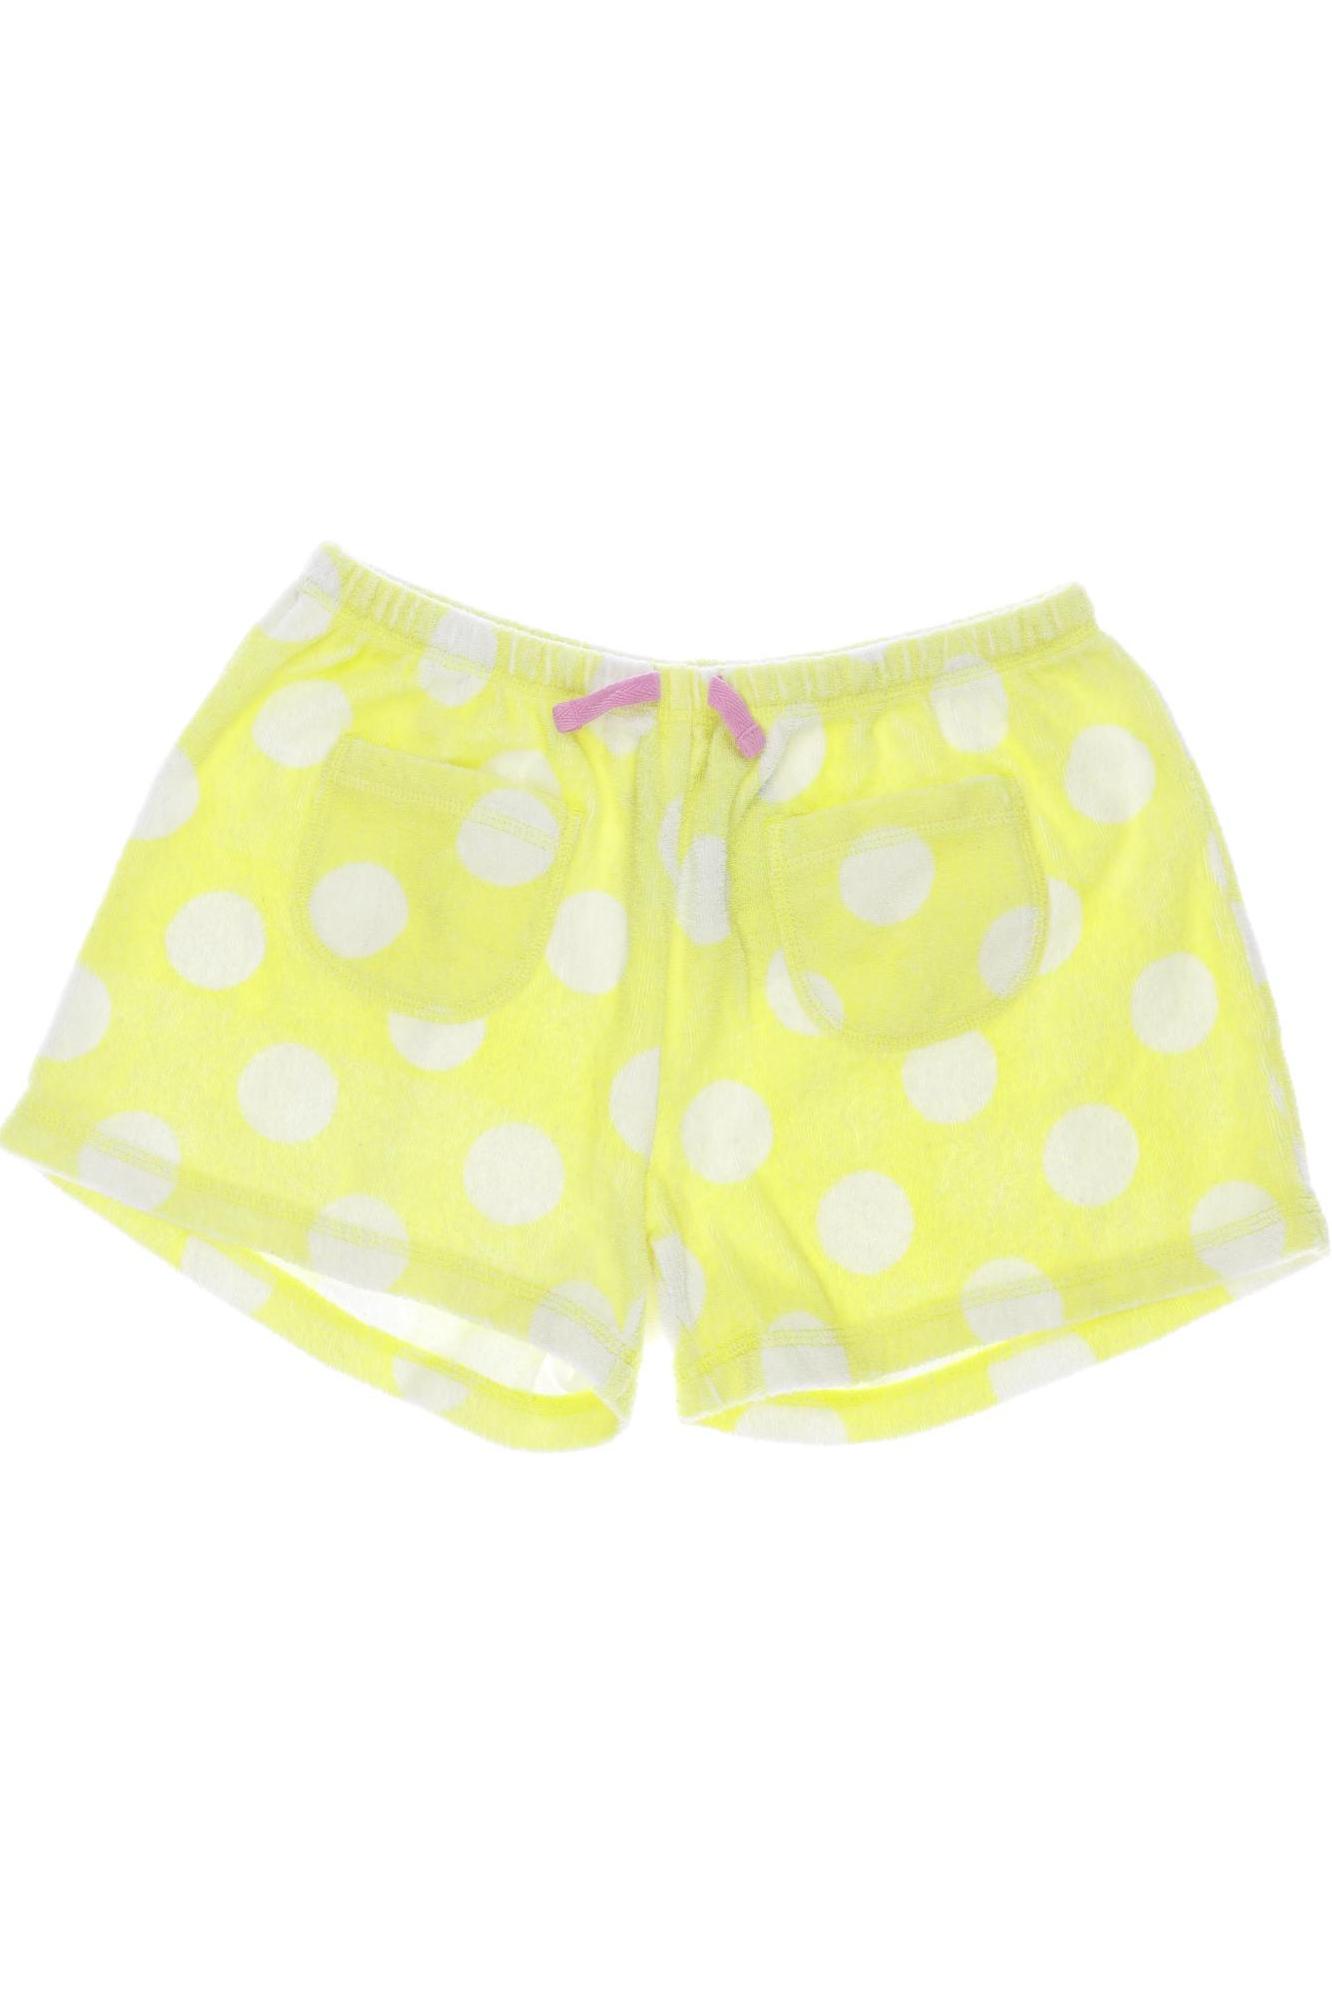 Mini Boden Damen Shorts, gelb, Gr. 152 von Mini Boden